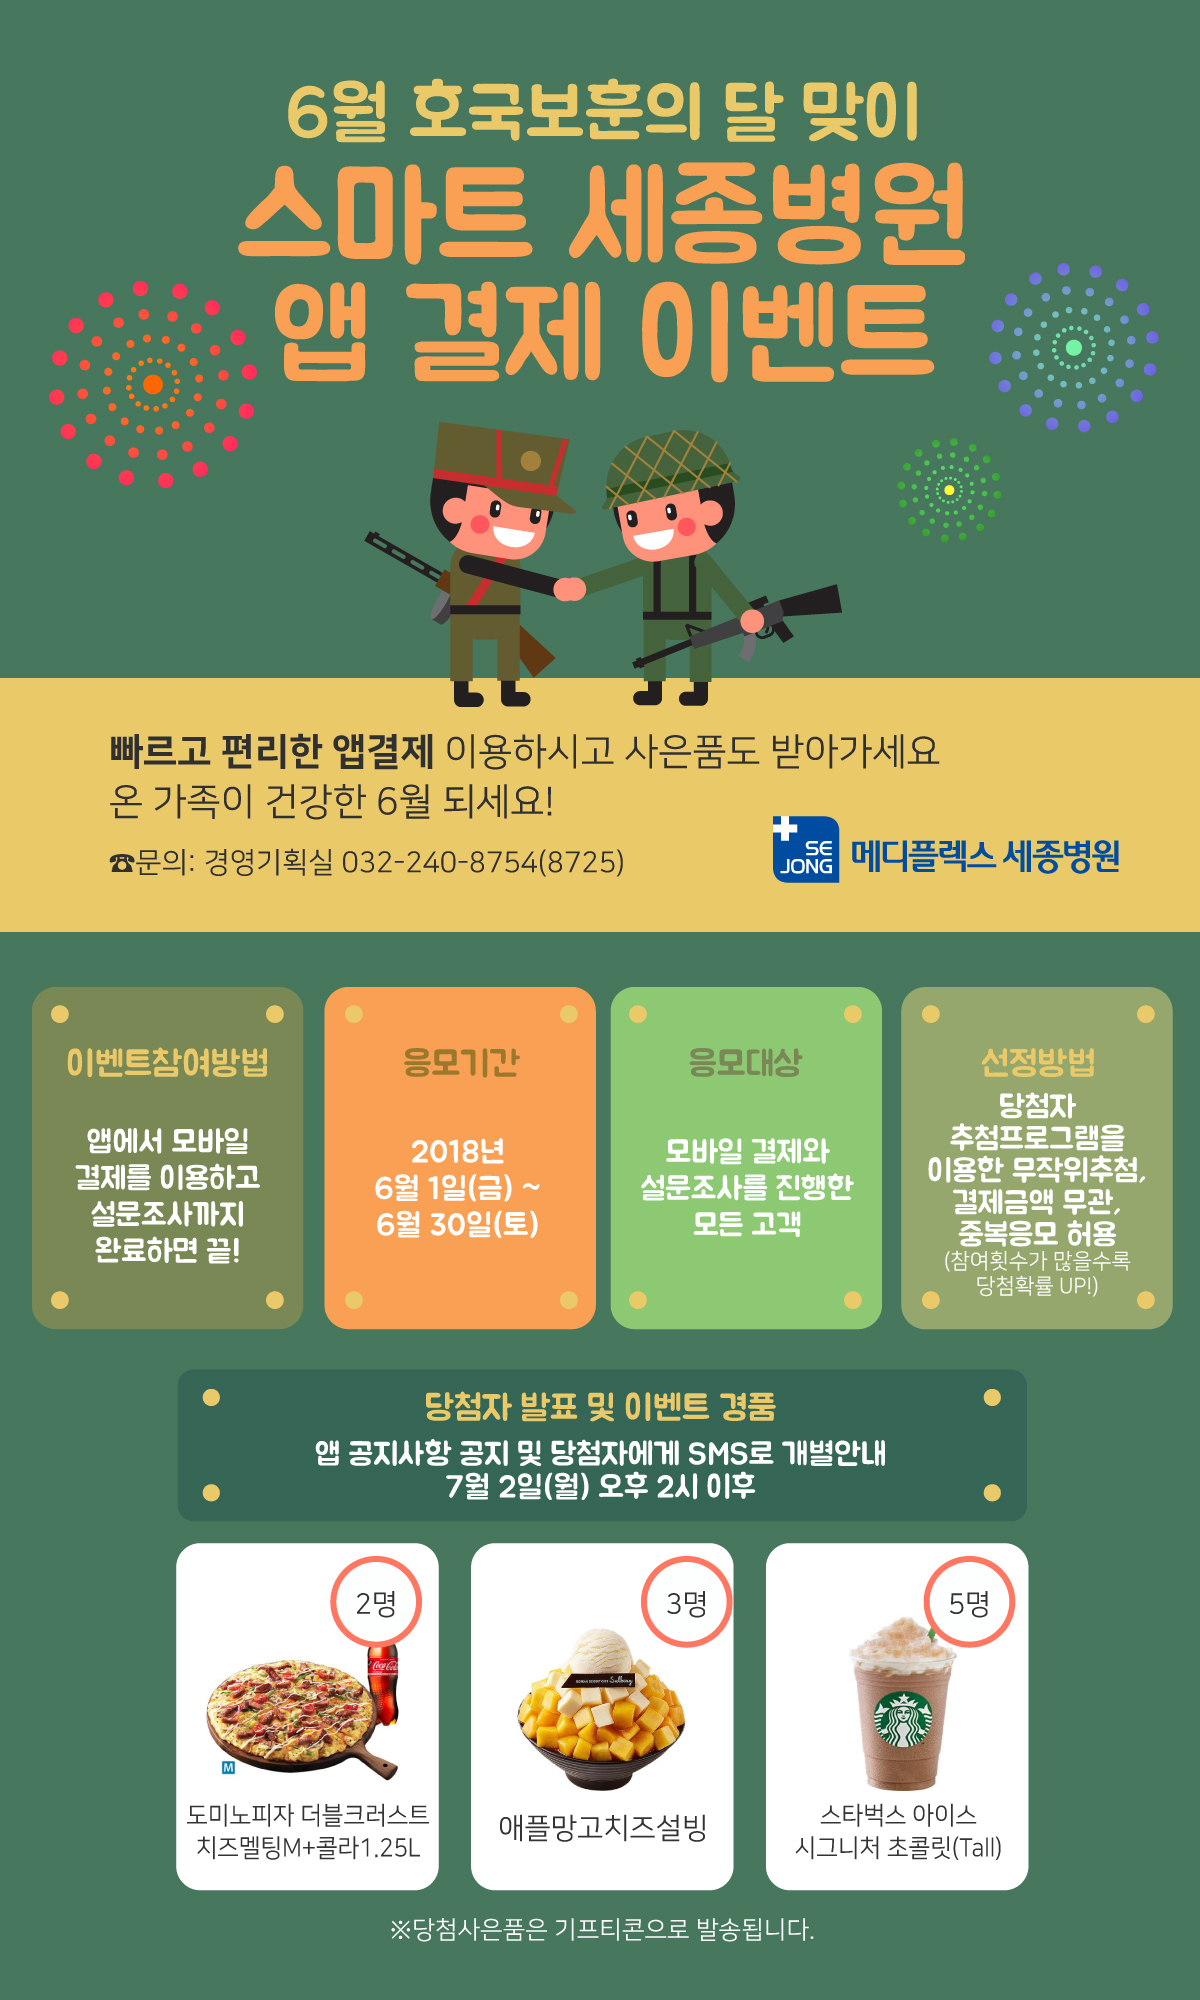 2018_0612_경영기획과_모바일앱이벤트6월_메디.jpg